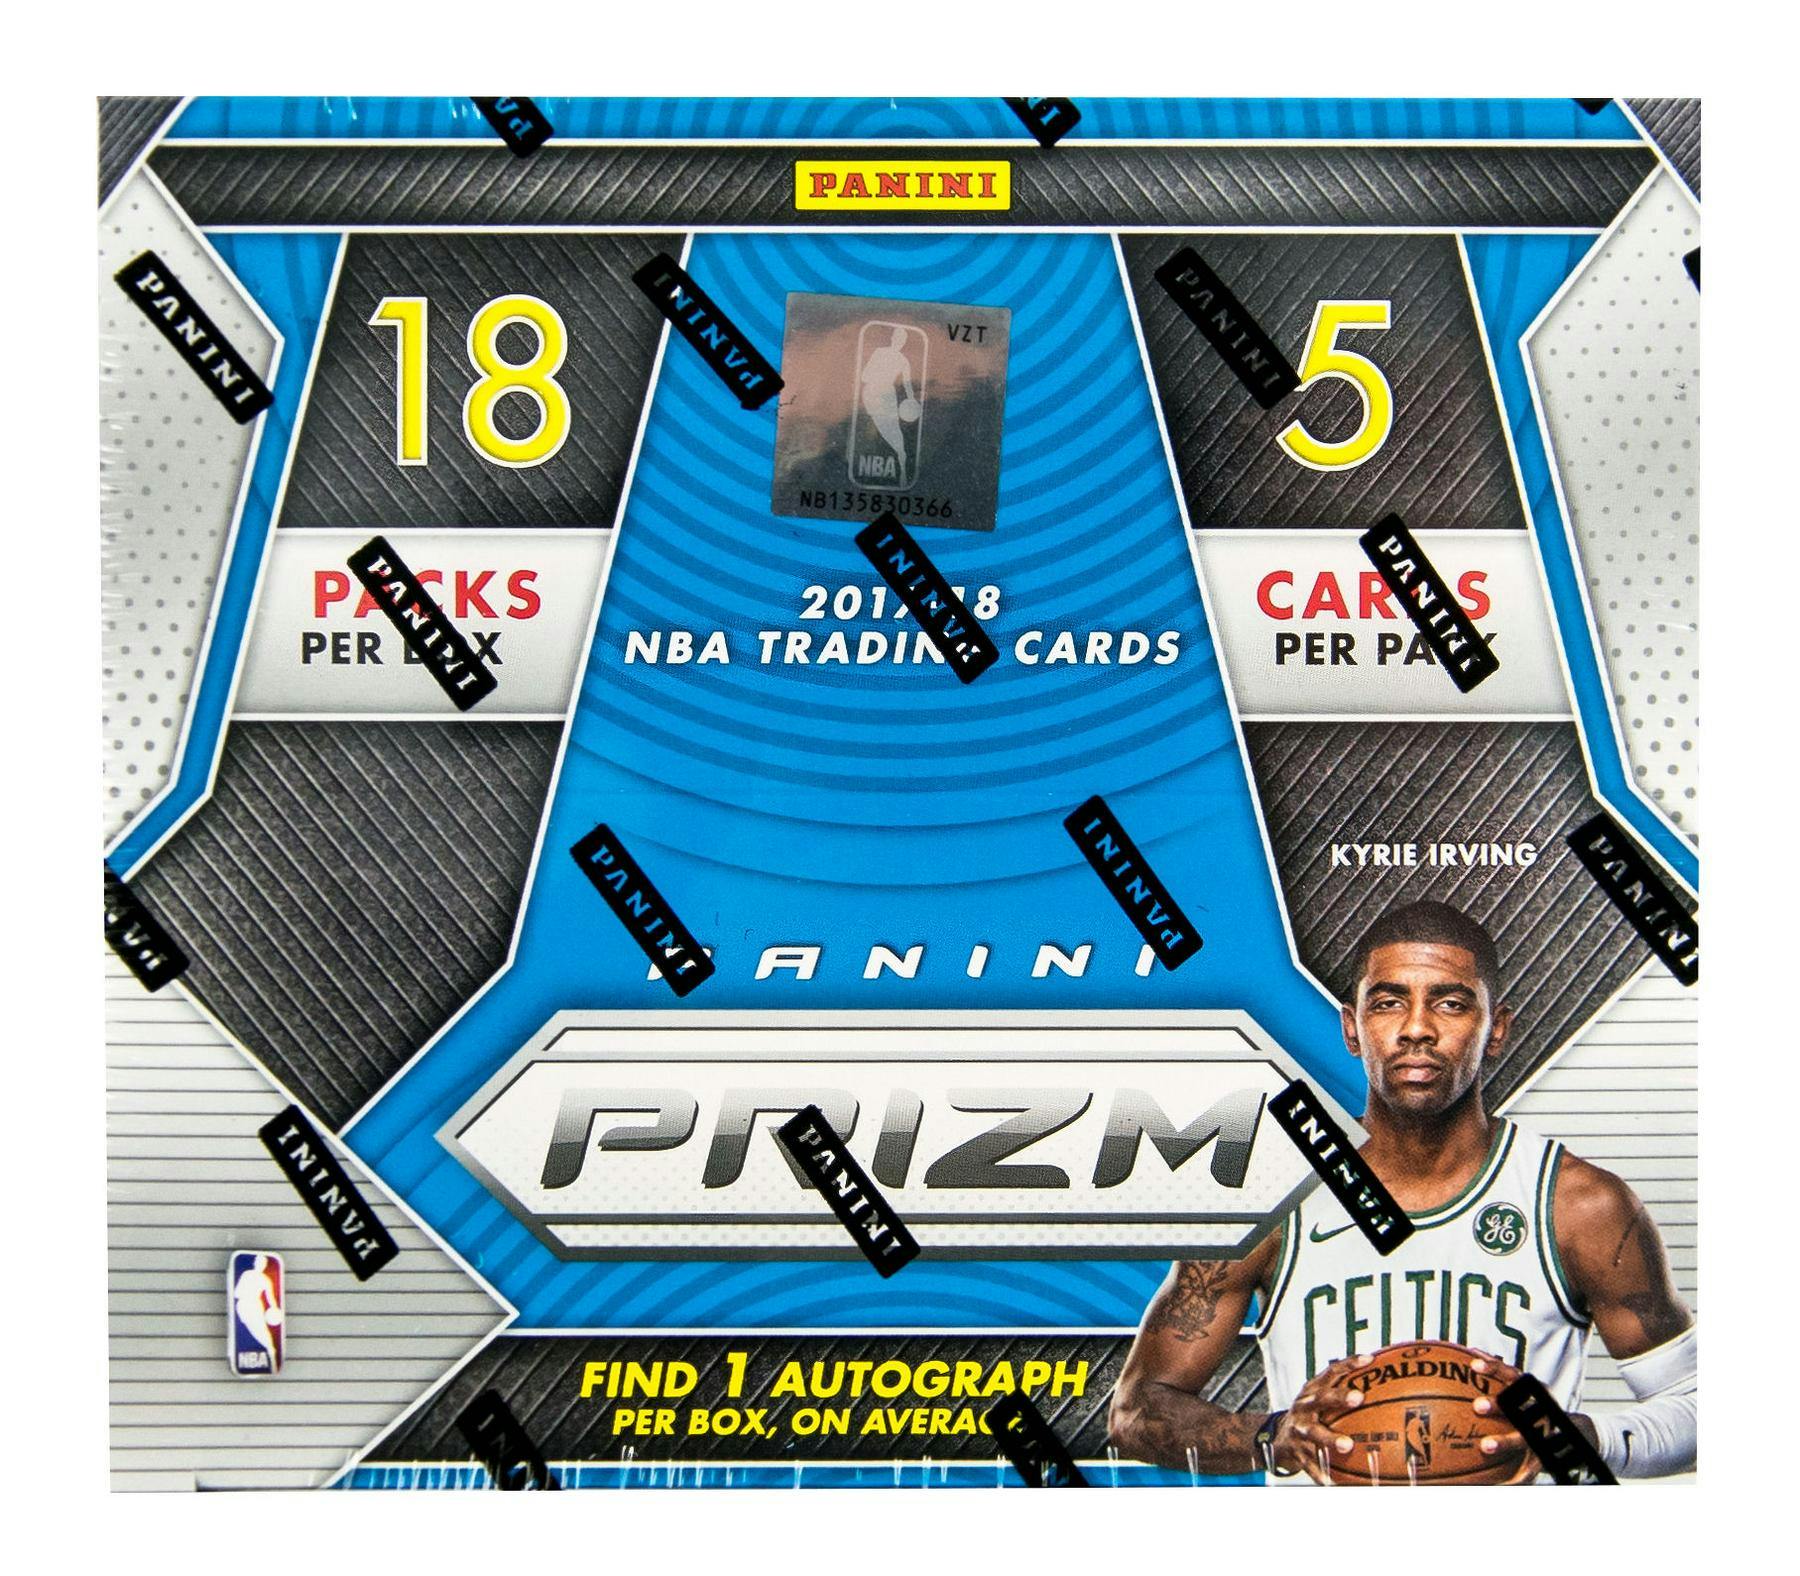 2017/18 Panini Prizm Fast Break Basketball Box | DA Card World